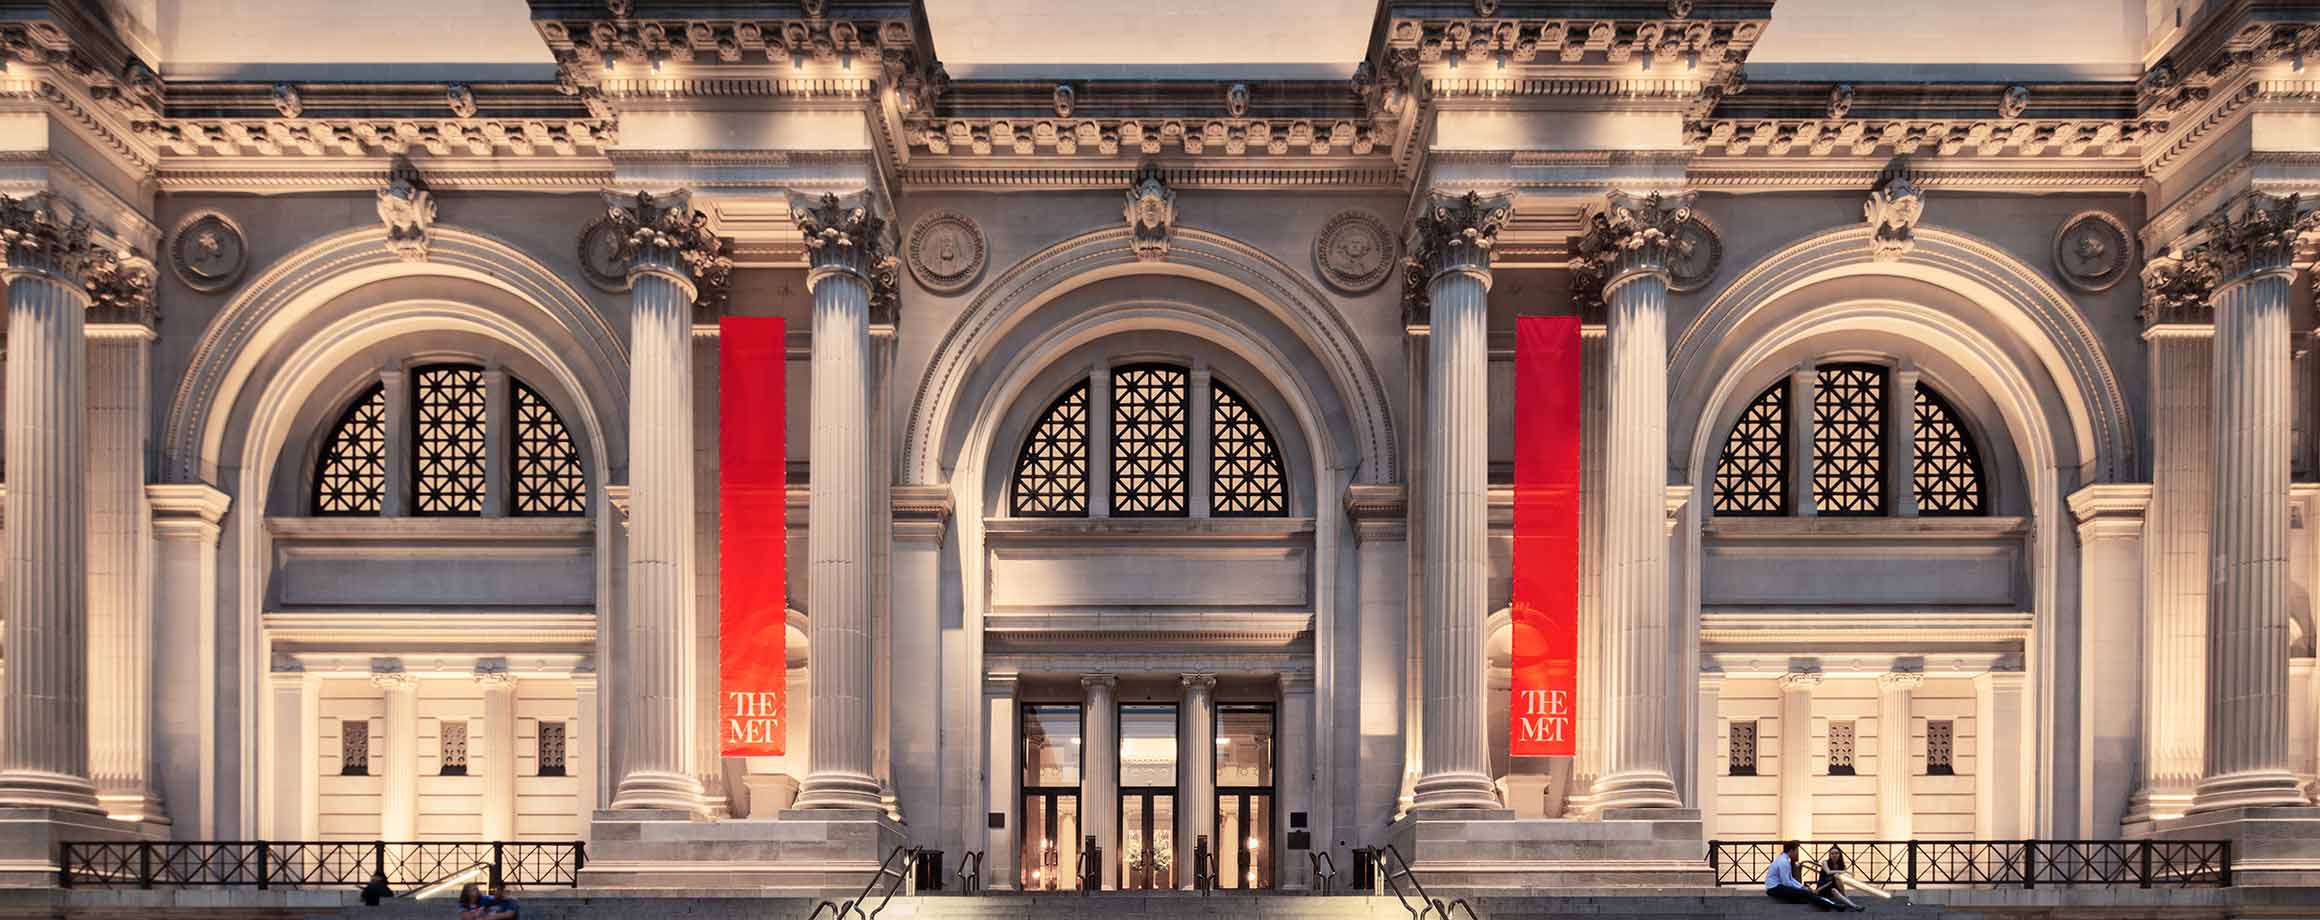 The Met Fifth Avenue The Metropolitan Museum Of Art